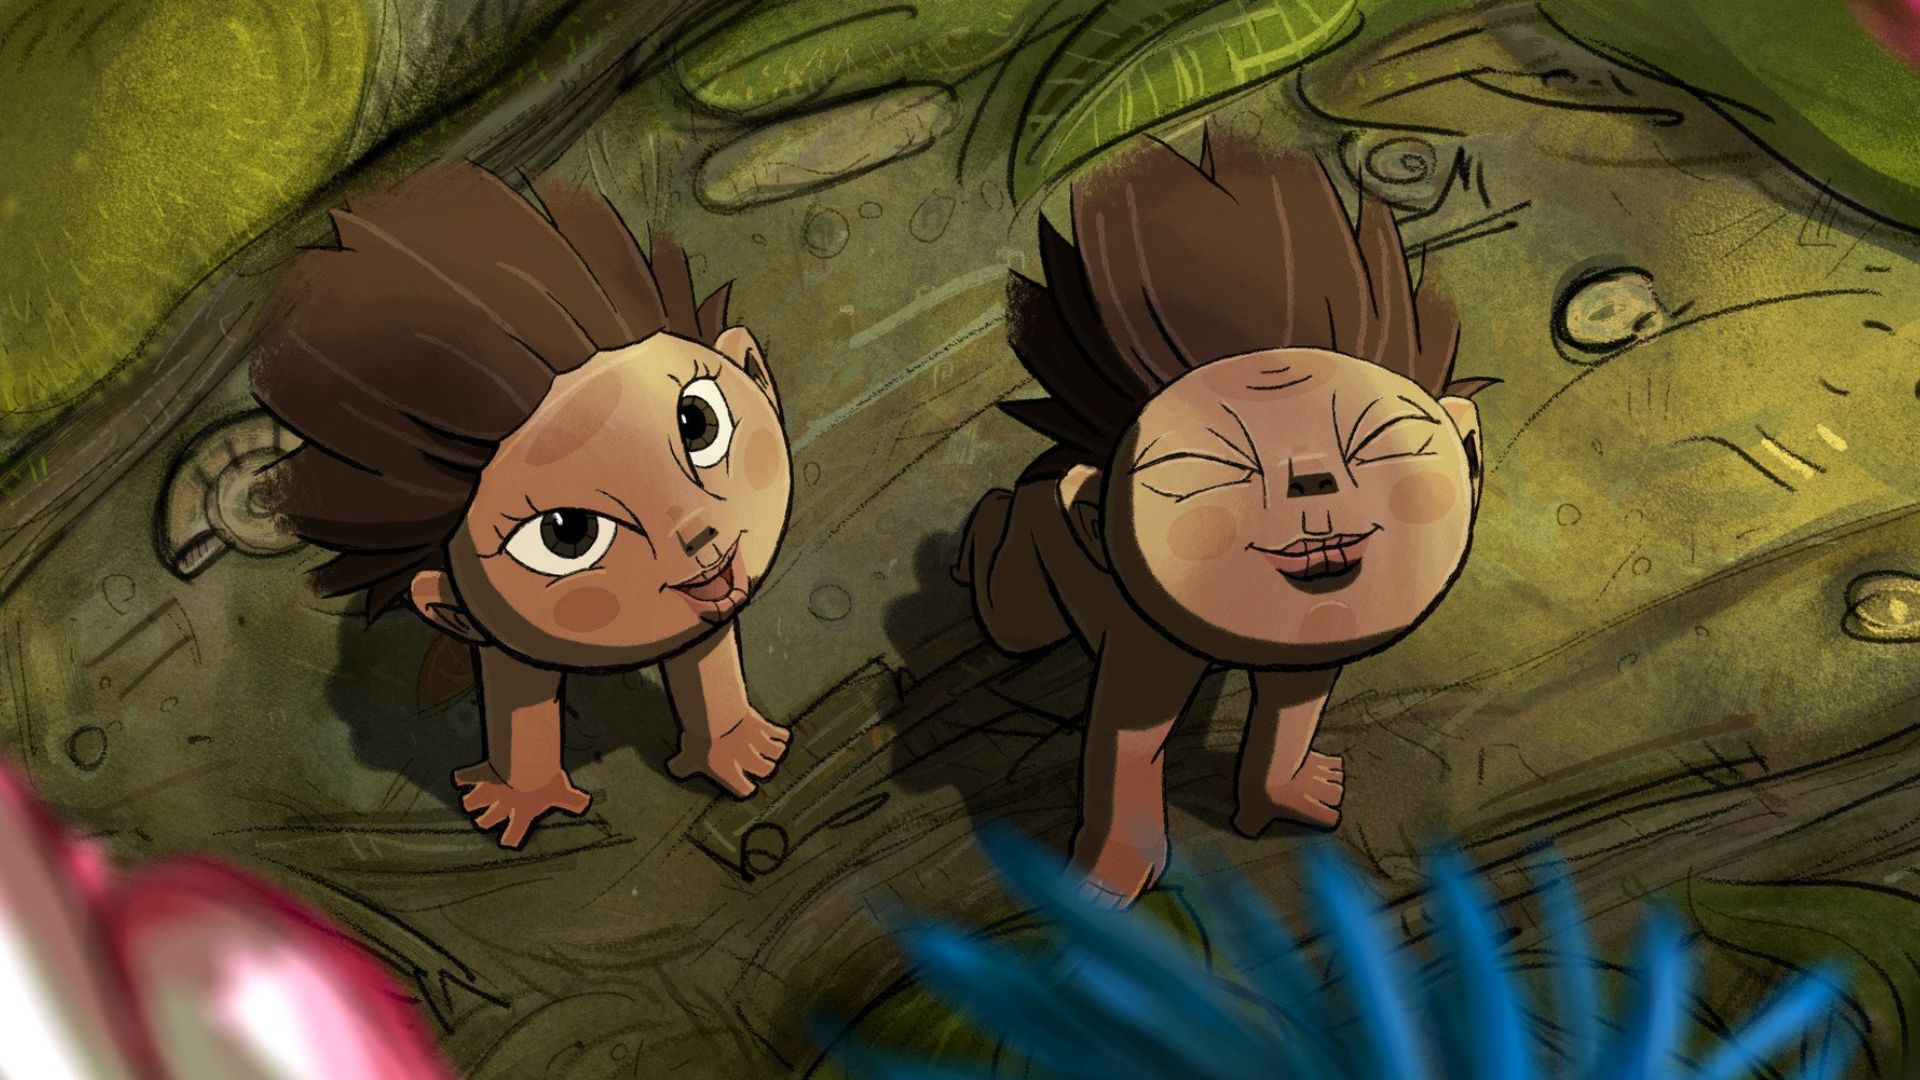 Kadr z filmu animowanego przedstawiający dwa małe leśne stworki.